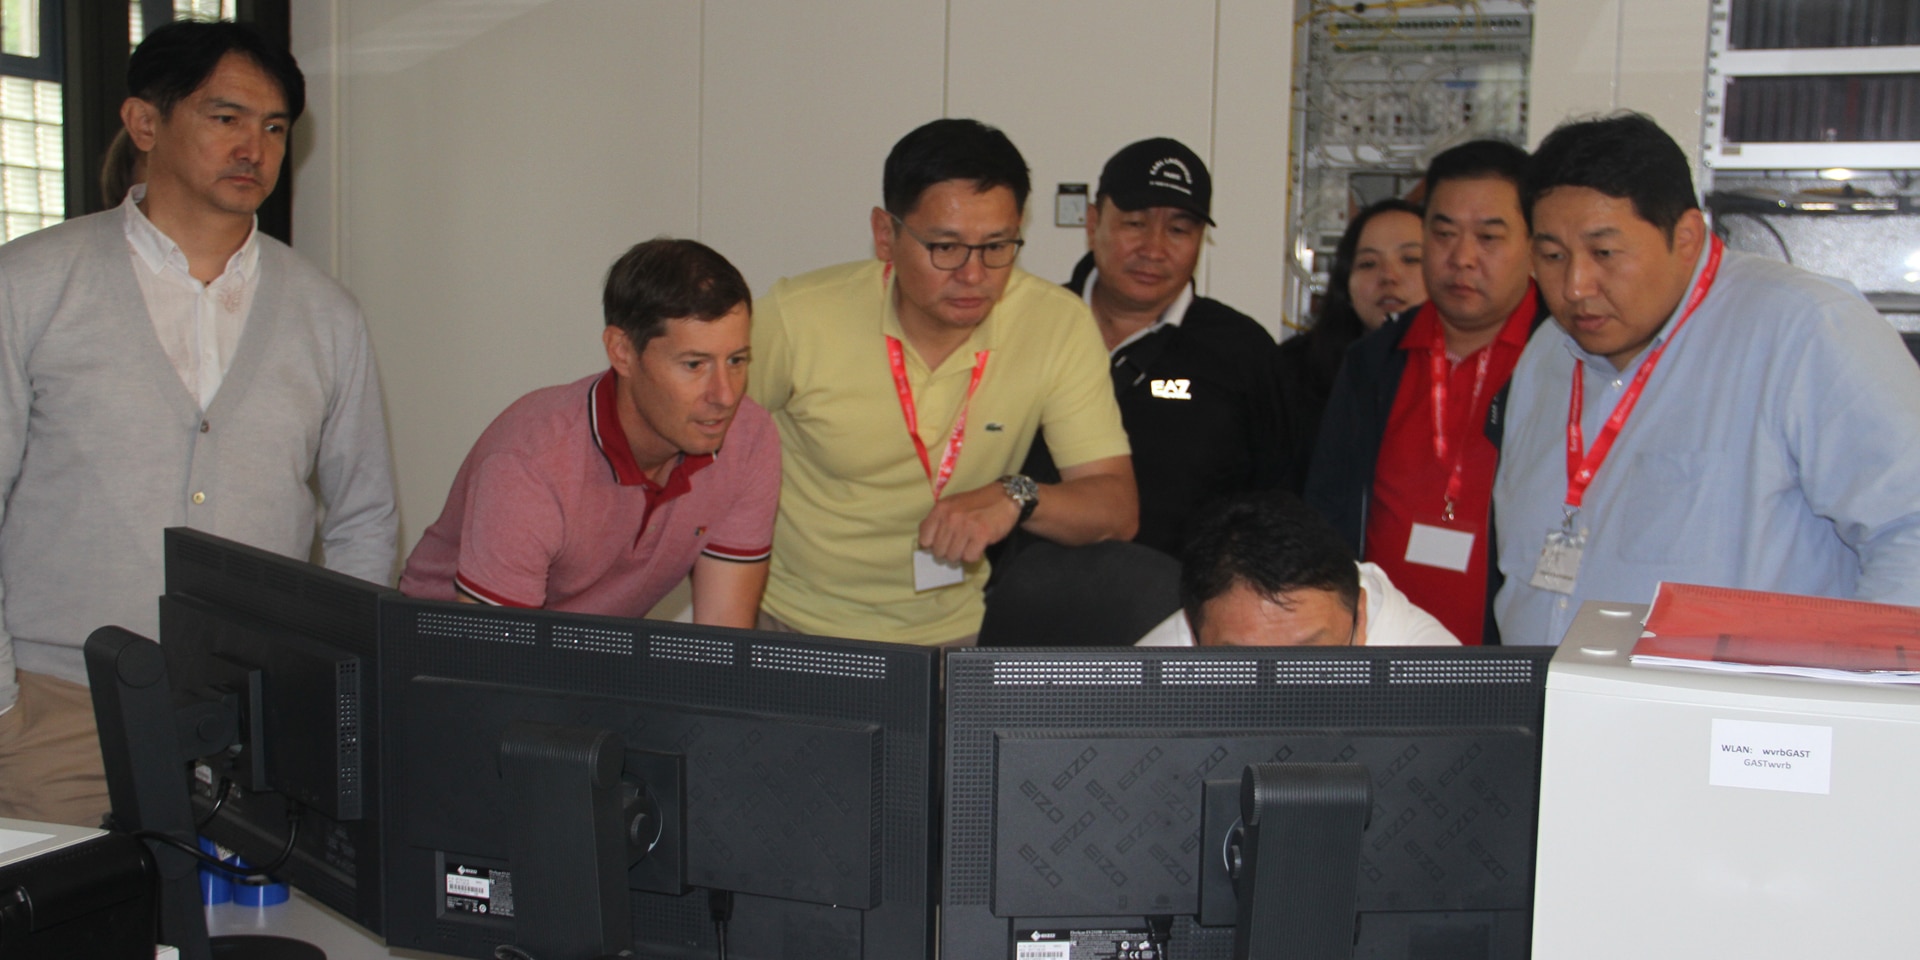 Ein Mitarbeiter des Wasserverbands Region Bern teilt seine Arbeit mit der mongolischen Delegation am Computerbildschirm.